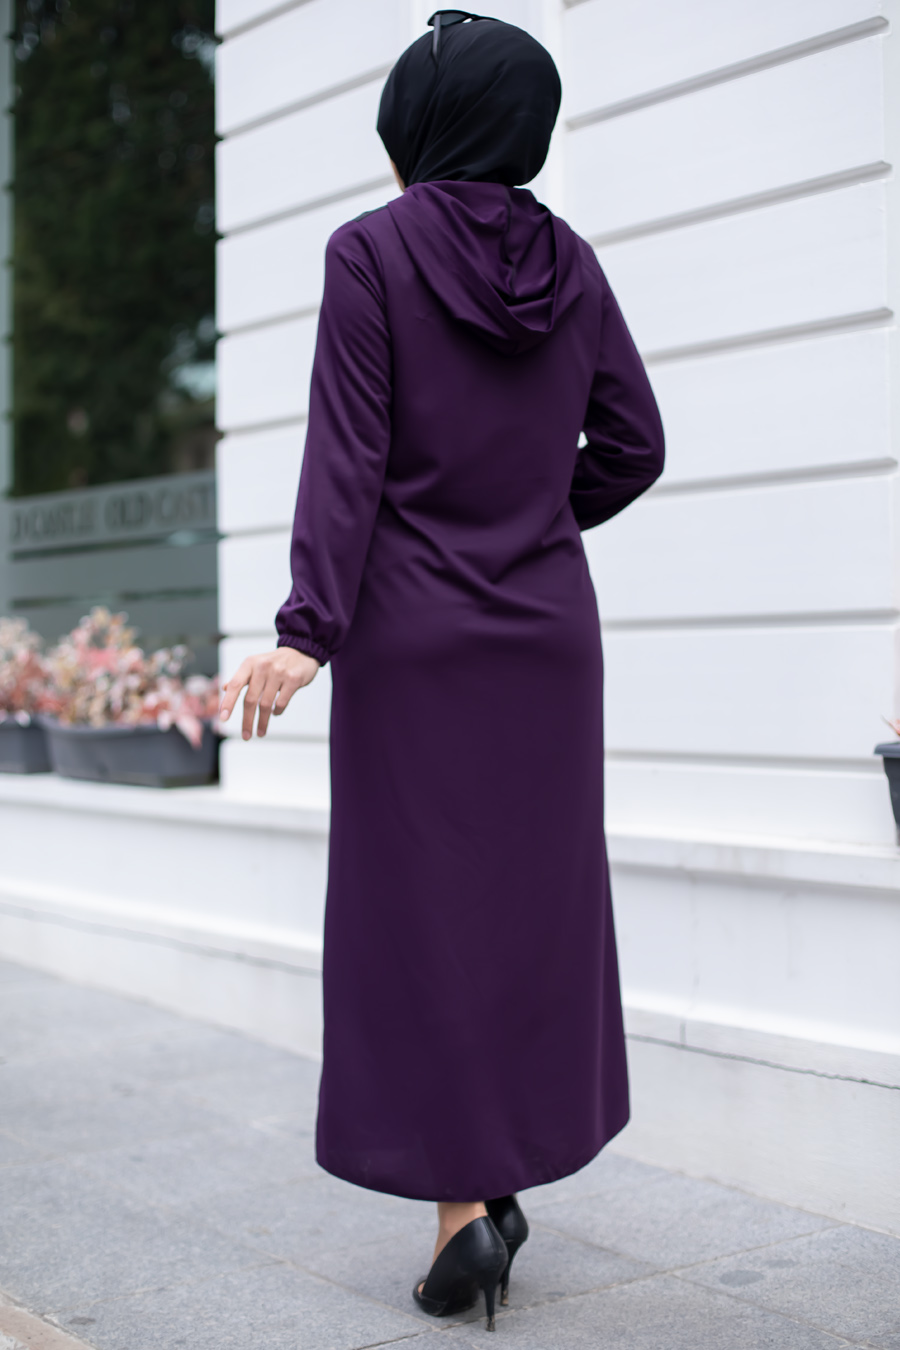 Purple Abaya